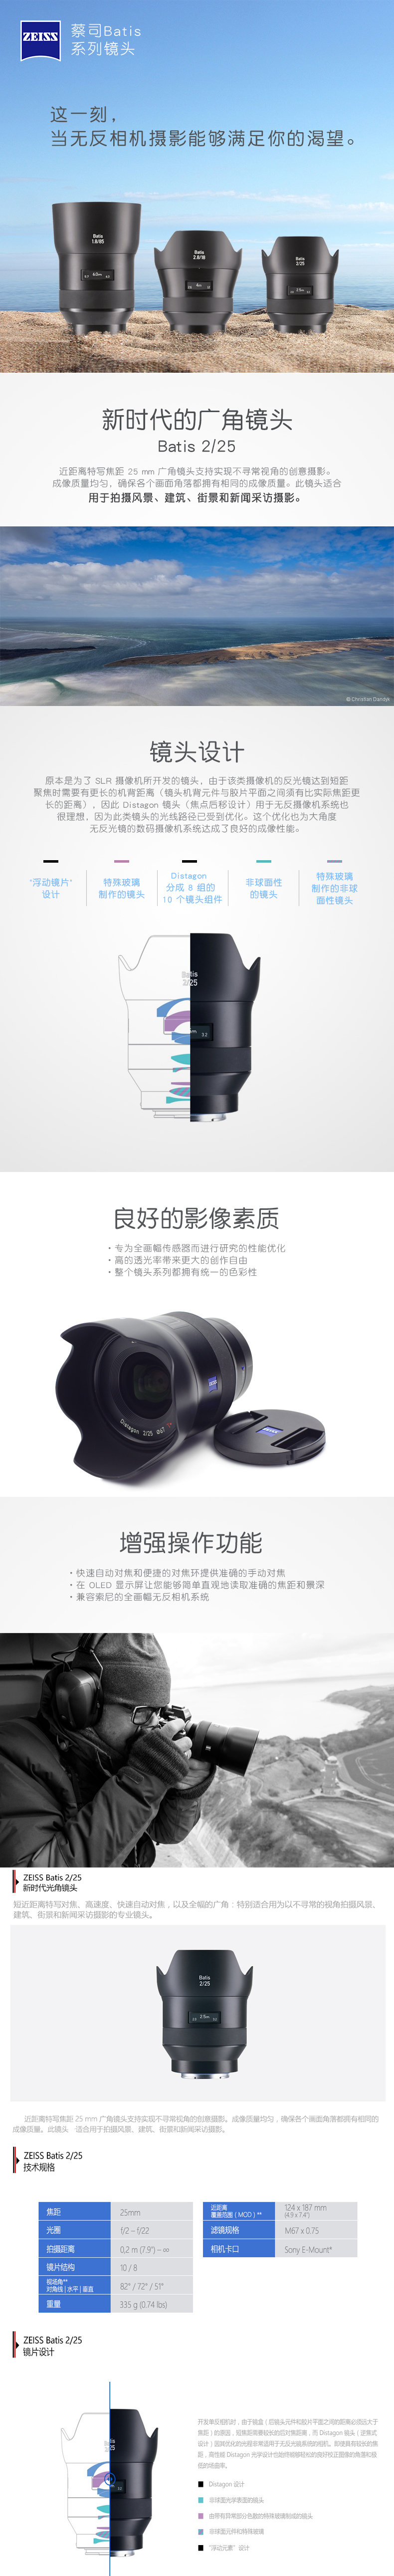 蔡司(ZEISS) Batis系列 自动对焦镜头 适用索尼全画幅 微单相机 Batis 2/25 广角镜头 索尼E口